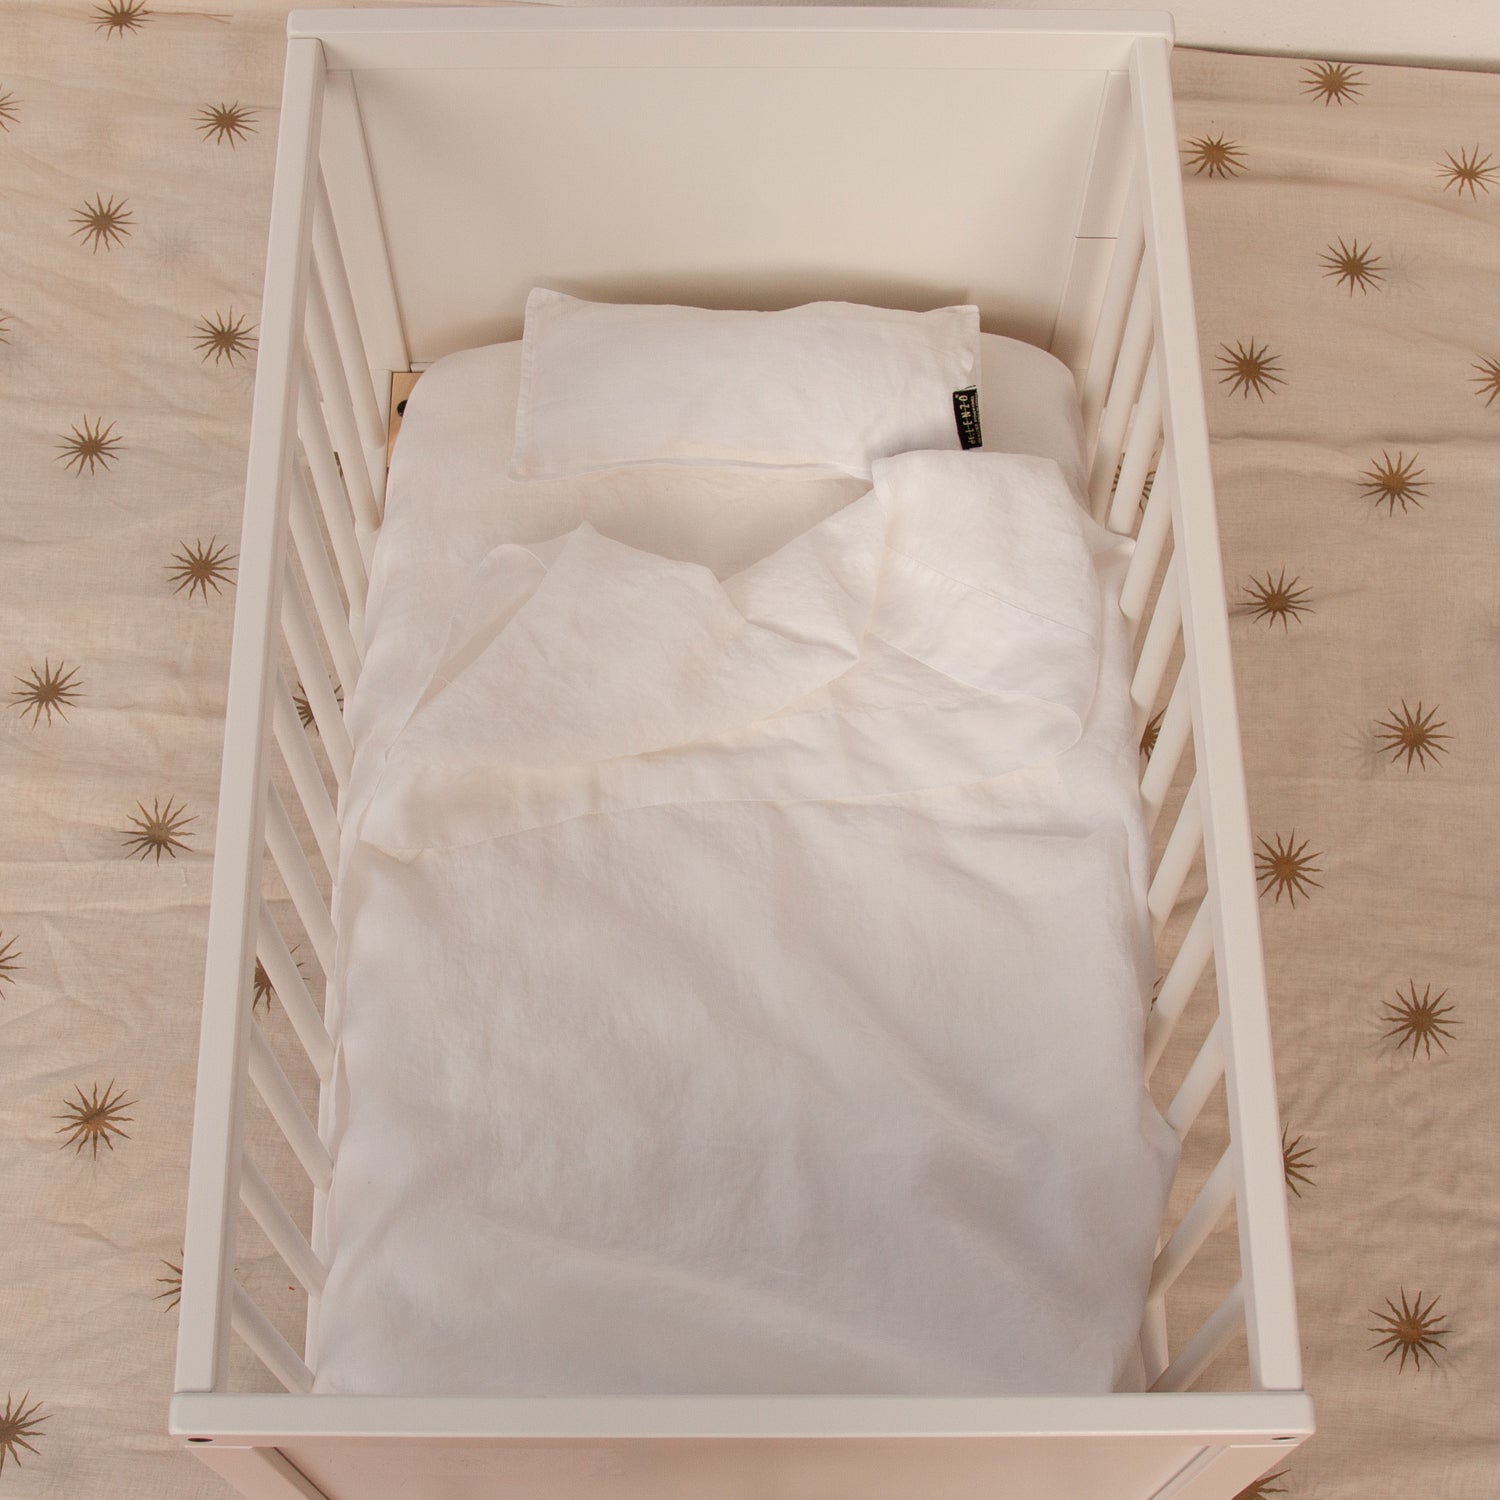 BASIC mini crib linen